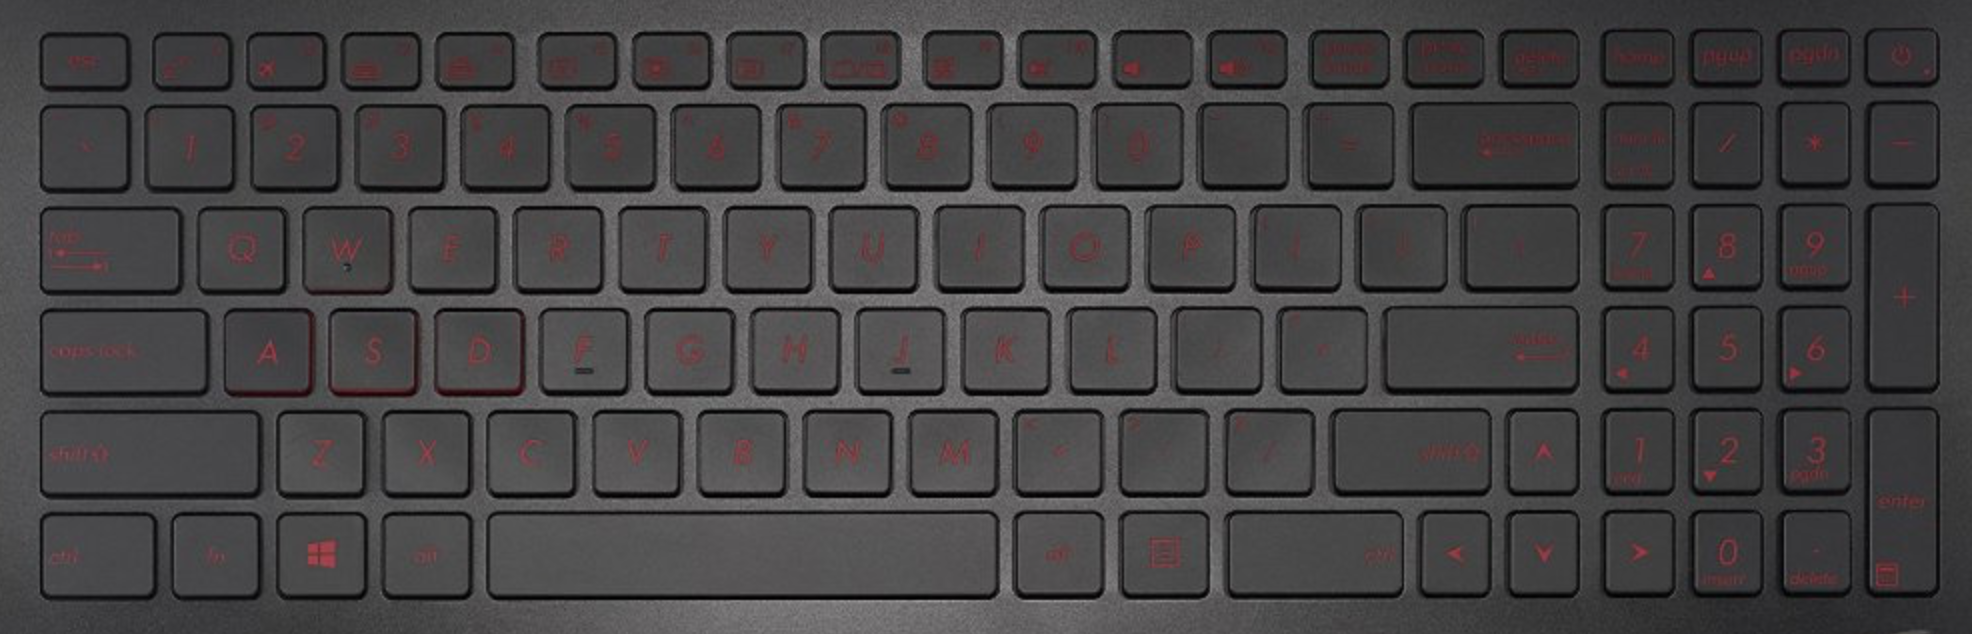 Asus G501VW Keyboard Keys Replacement 